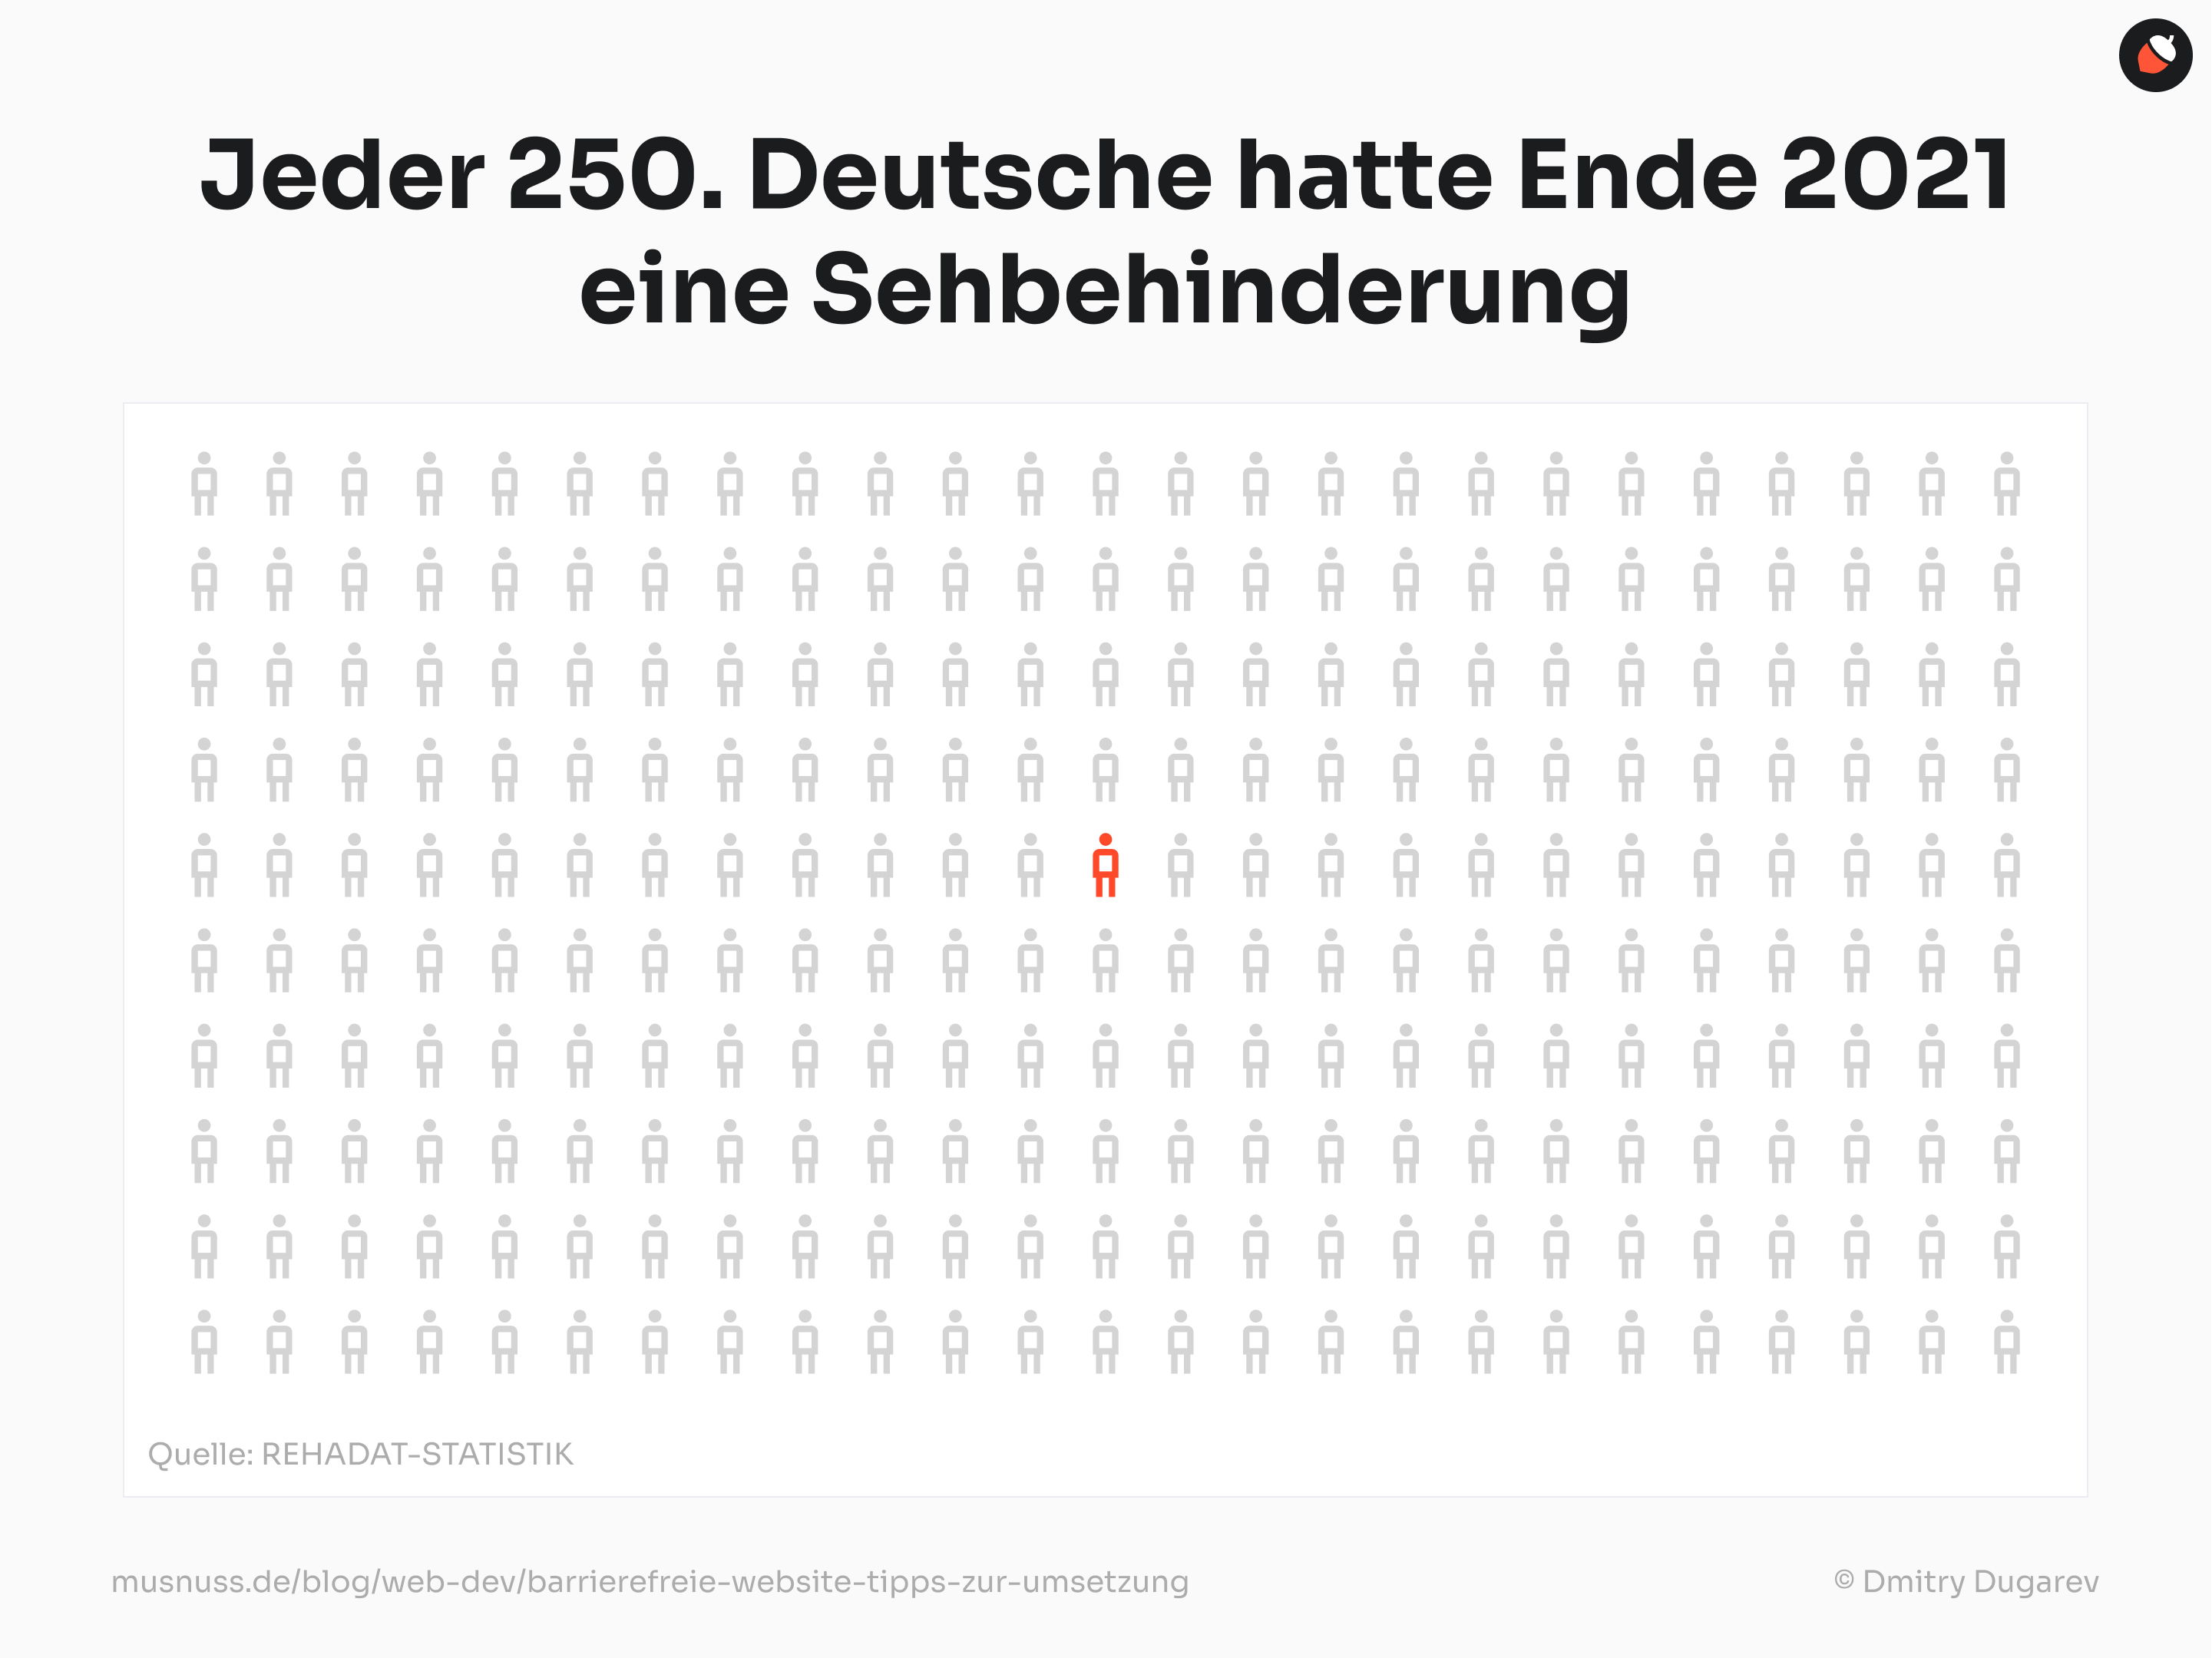 Das Bild zeigt eine Statistik über Sehbehinderungen in Deutschland. Oben steht in großer Schrift: „Jeder 250. Deutsche hatte Ende 2021 eine Sehbehinderung“. Darunter ist eine Grafik mit vielen grauen Männchen, die in einem Raster angeordnet sind. Eines der Männchen in der Mitte ist rot hervorgehoben, um den Anteil von Menschen mit Sehbehinderungen zu veranschaulichen. Am unteren Rand des Bildes ist die Quelle „REHADAT-STATISTIK“ angegeben. Darunter befindet sich der Hinweis „musnuss.de/blog/web-dev/barrierefreie-website-tipps-zur-umsetzung“ und der Illustrator „© Dmitry Dugarev“.